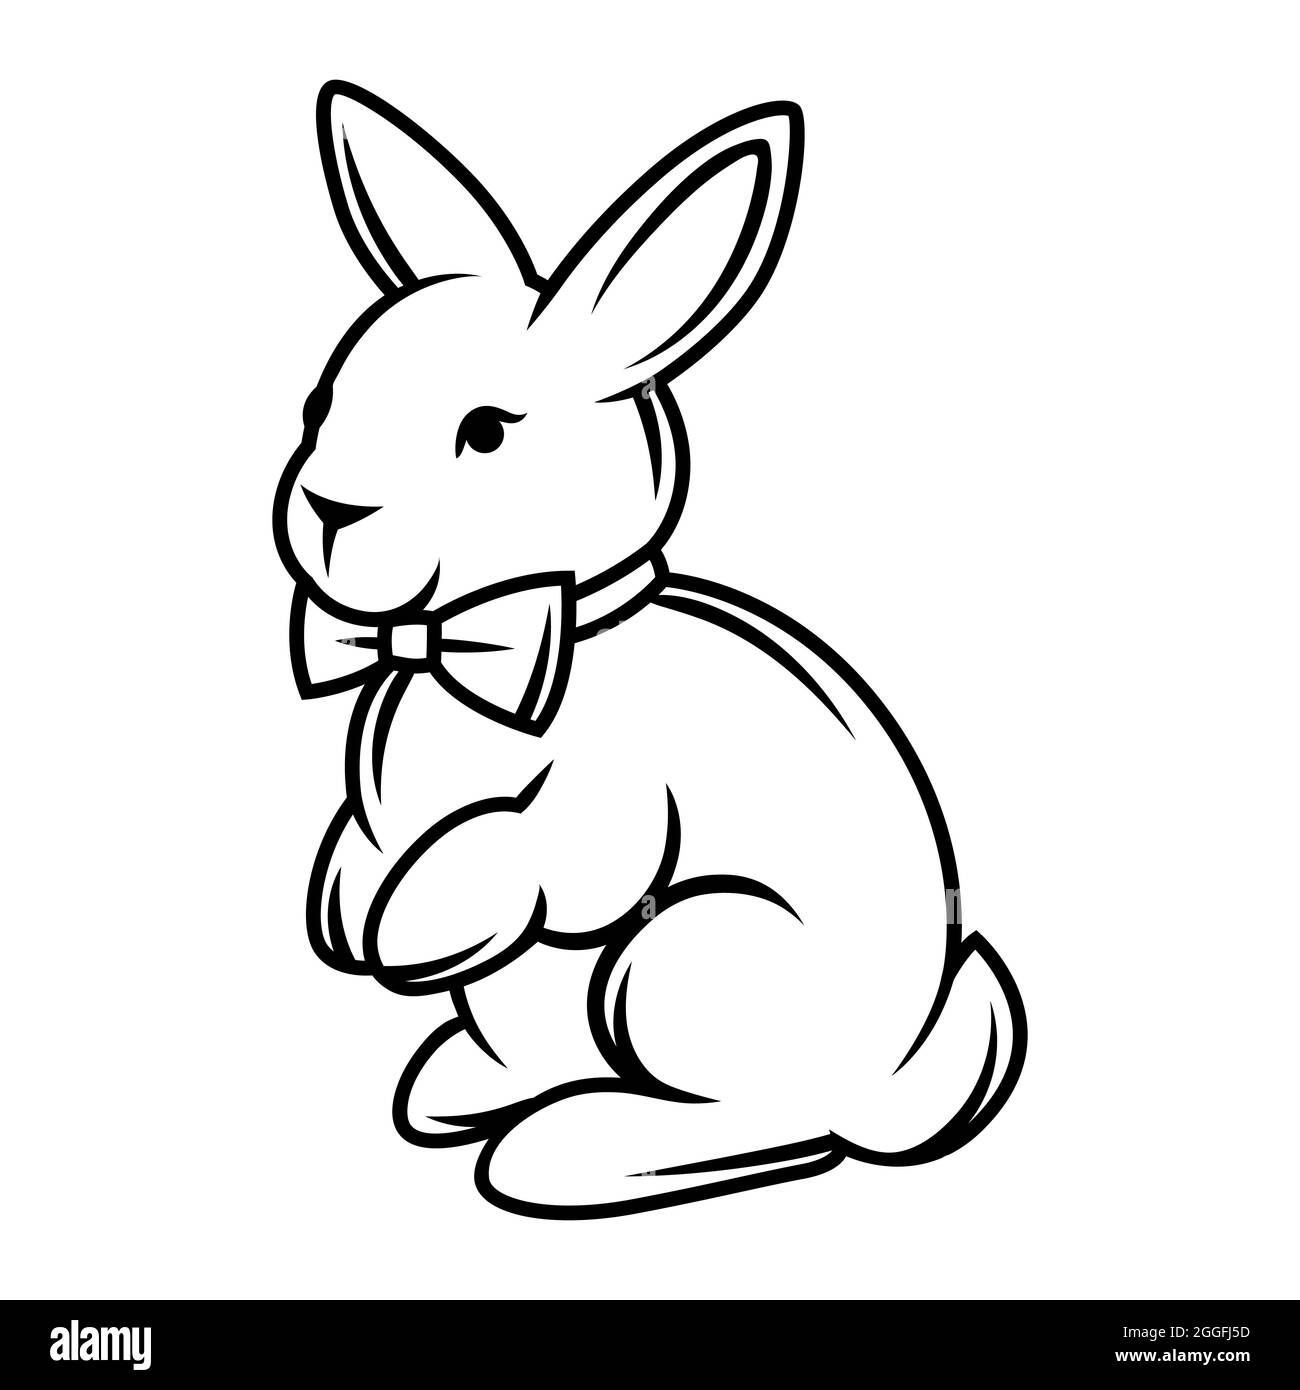 Illustrazione di coniglio con cravatta ad arco. Immagine stilizzata in  bianco e nero Immagine e Vettoriale - Alamy